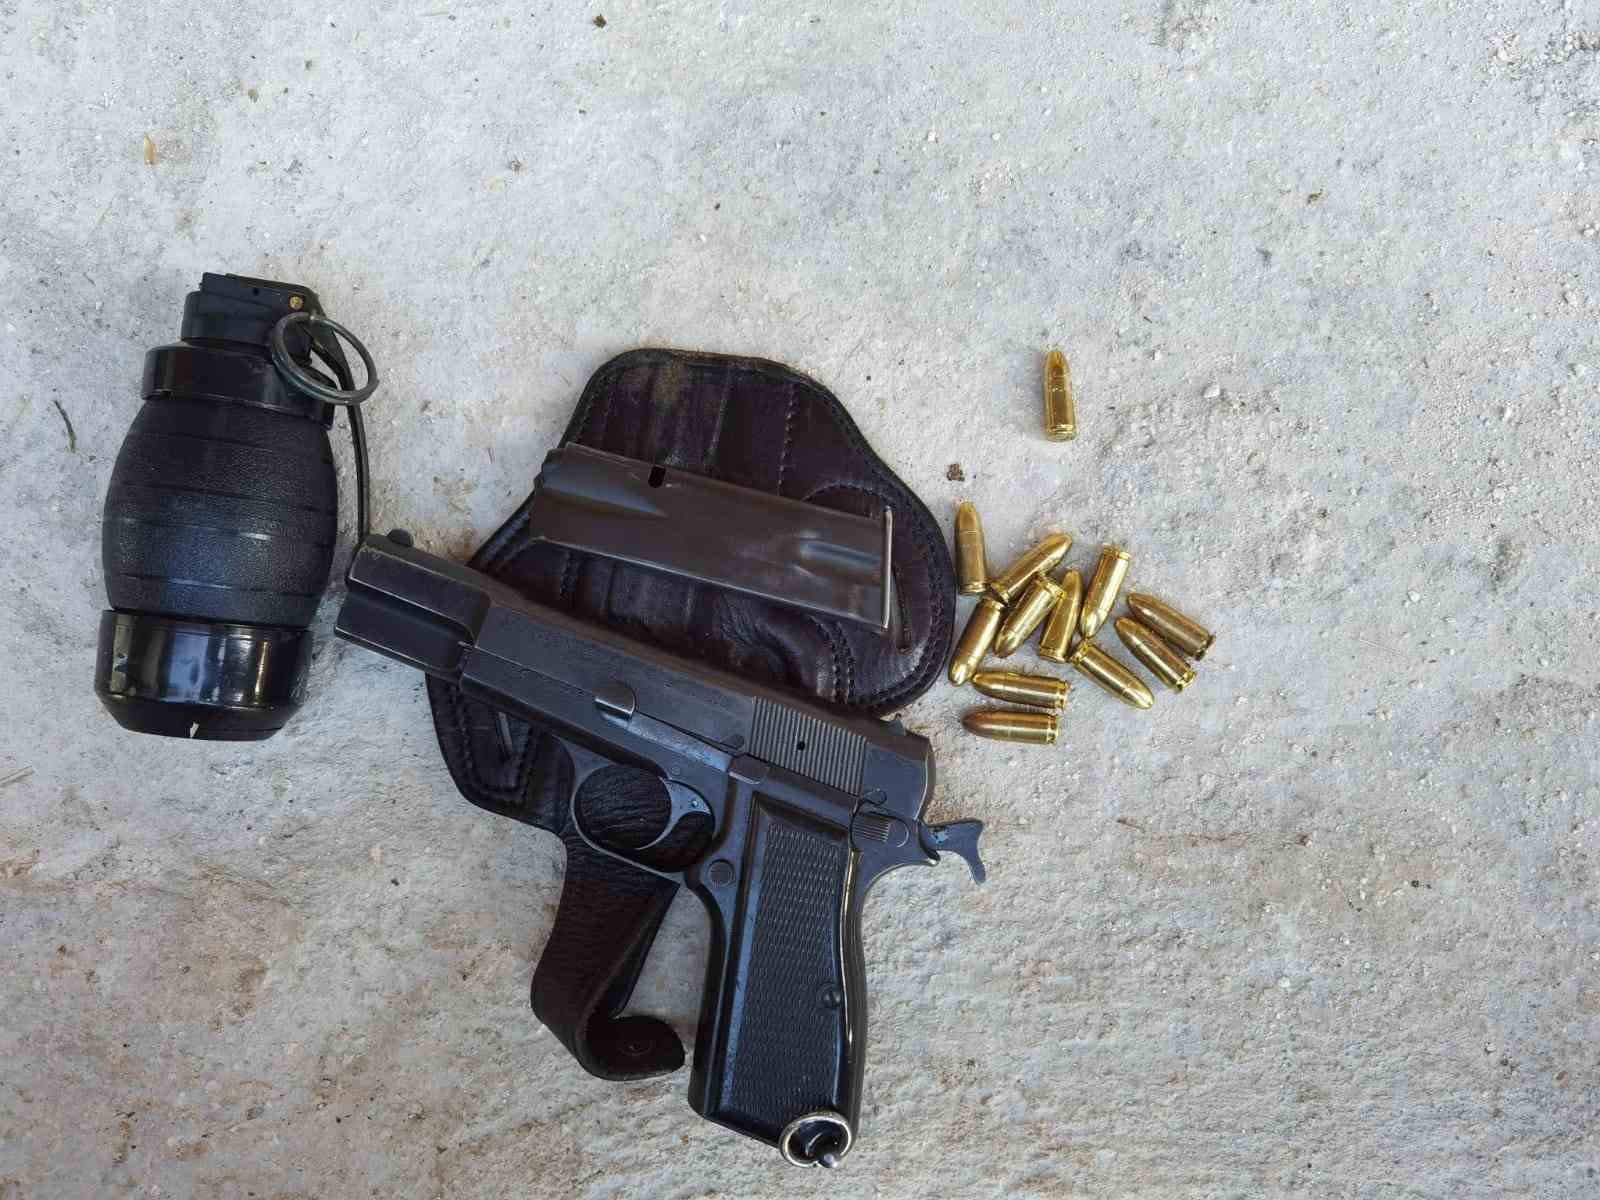 Şanlıurfa’da silah kaçakçılarına operasyon: 3 gözaltı
